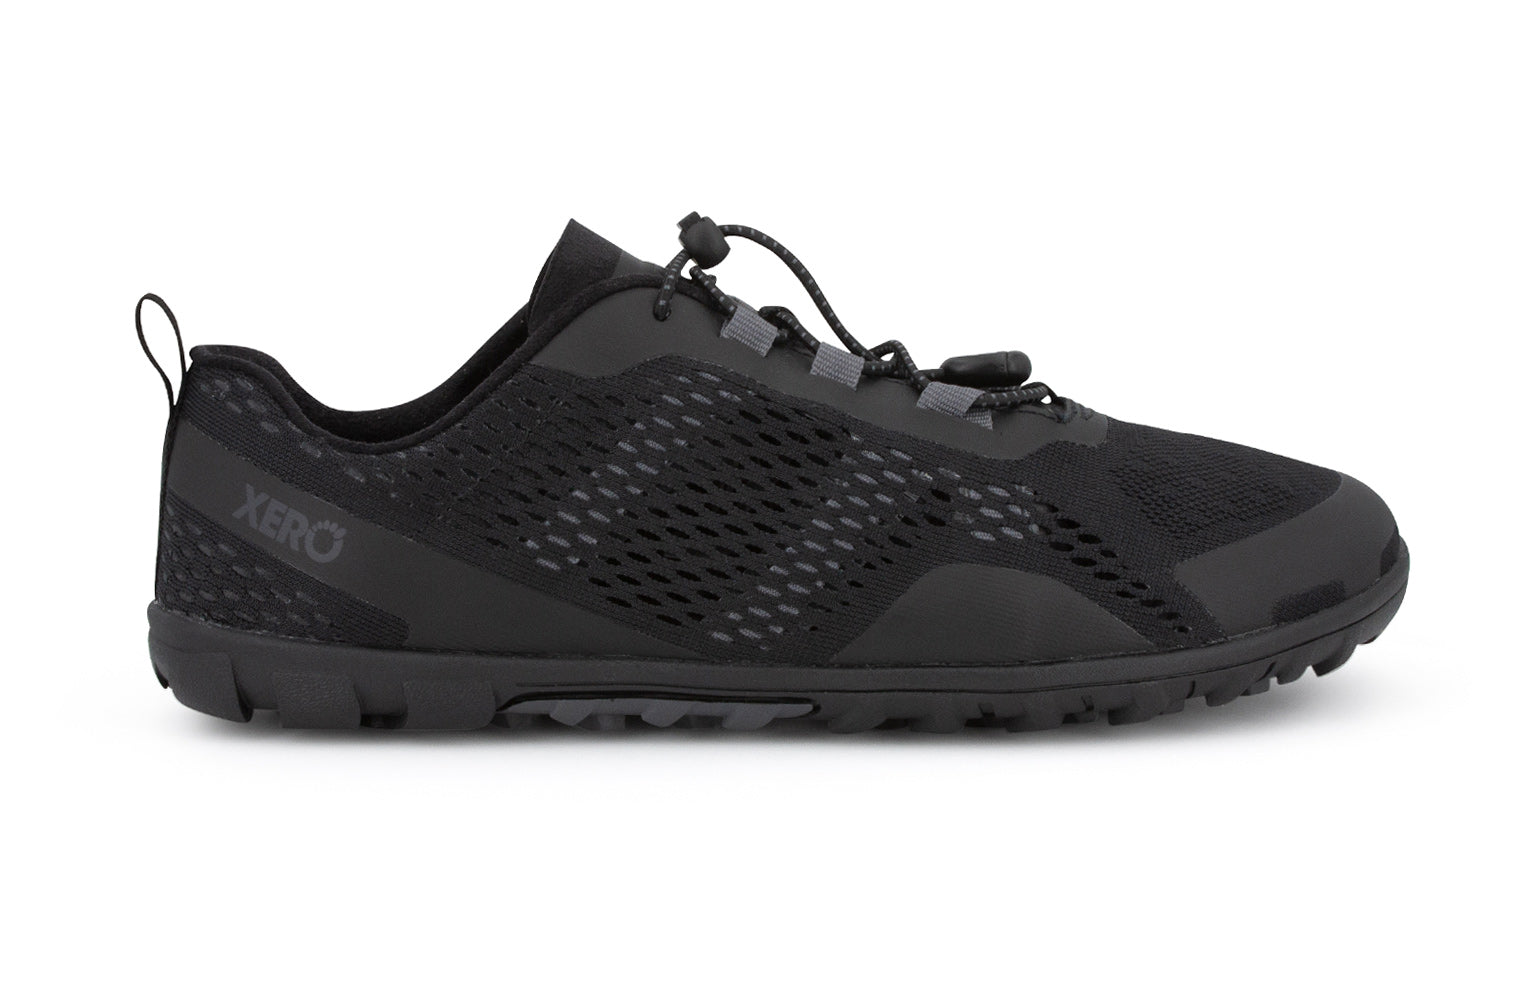 Xero Shoes Aqua X Sport barfods vand træningssko til mænd i farven black, yderside